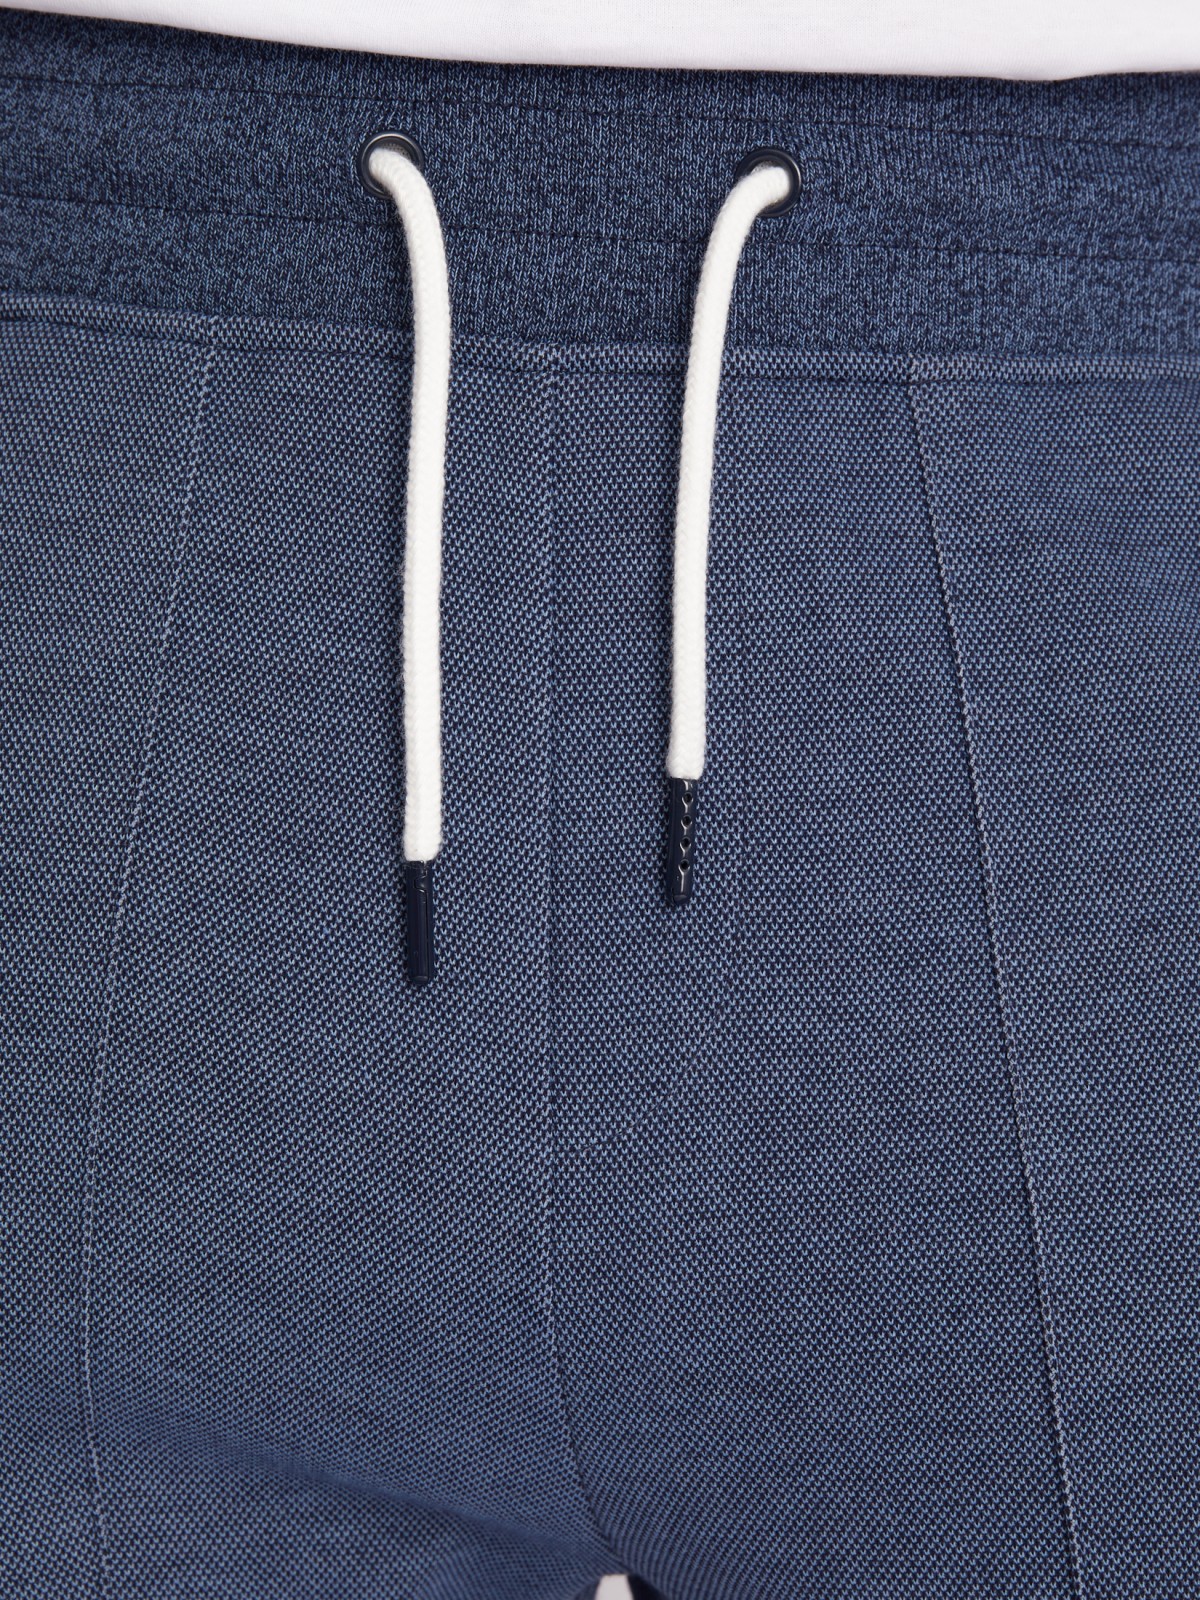 Трикотажные брюки-джоггеры в спортивном стиле zolla 213317604053, цвет голубой, размер S - фото 4